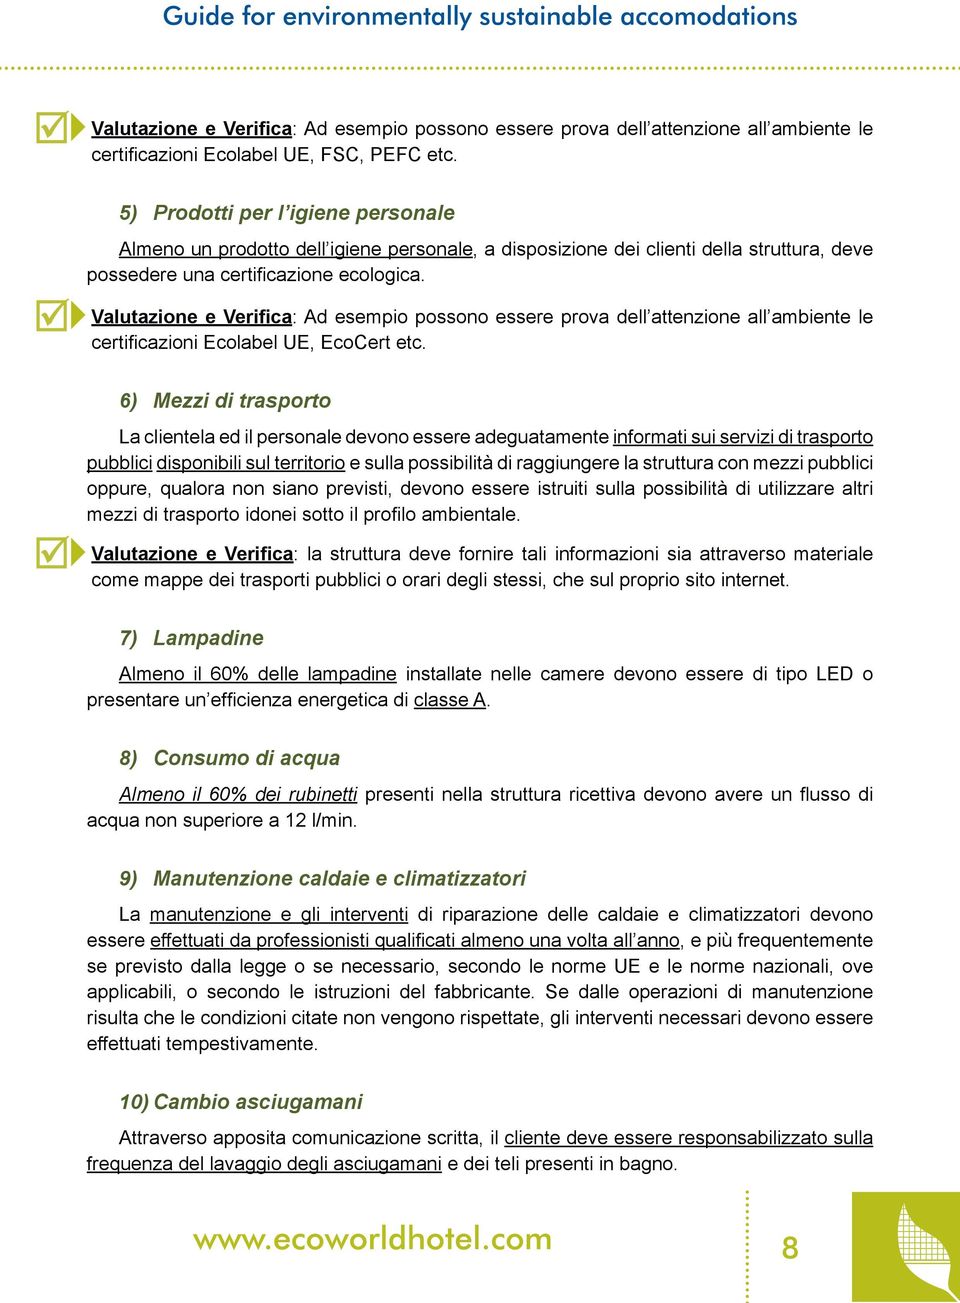 Valutazione e Verifica: Ad esempio possono essere prova dell attenzione all ambiente le certificazioni Ecolabel UE, EcoCert etc.